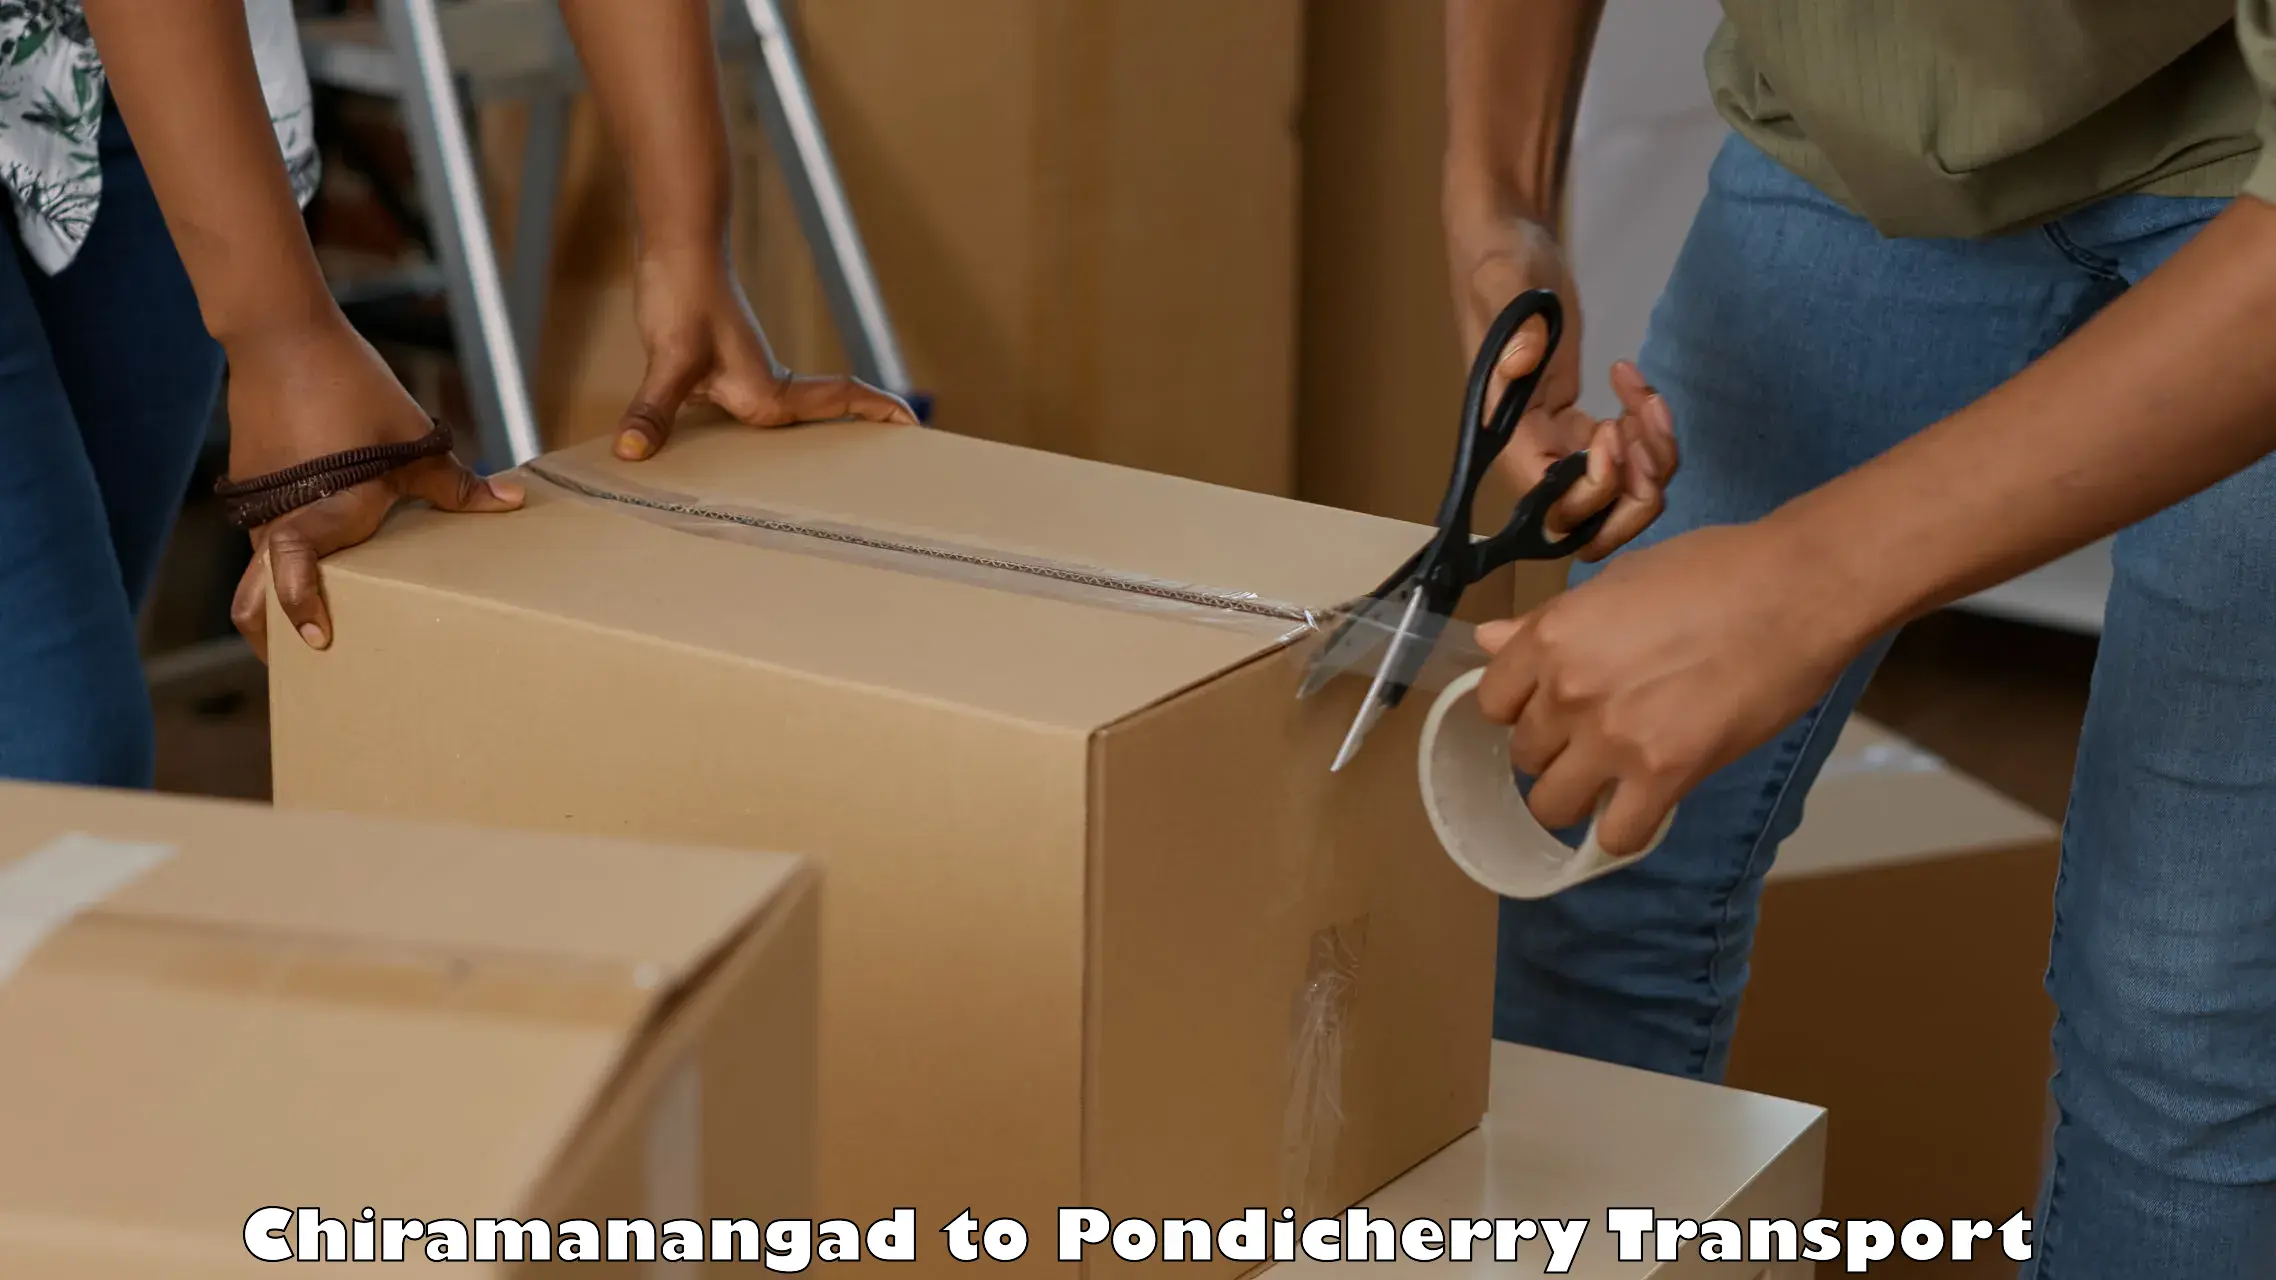 Transport in sharing in Chiramanangad to Pondicherry